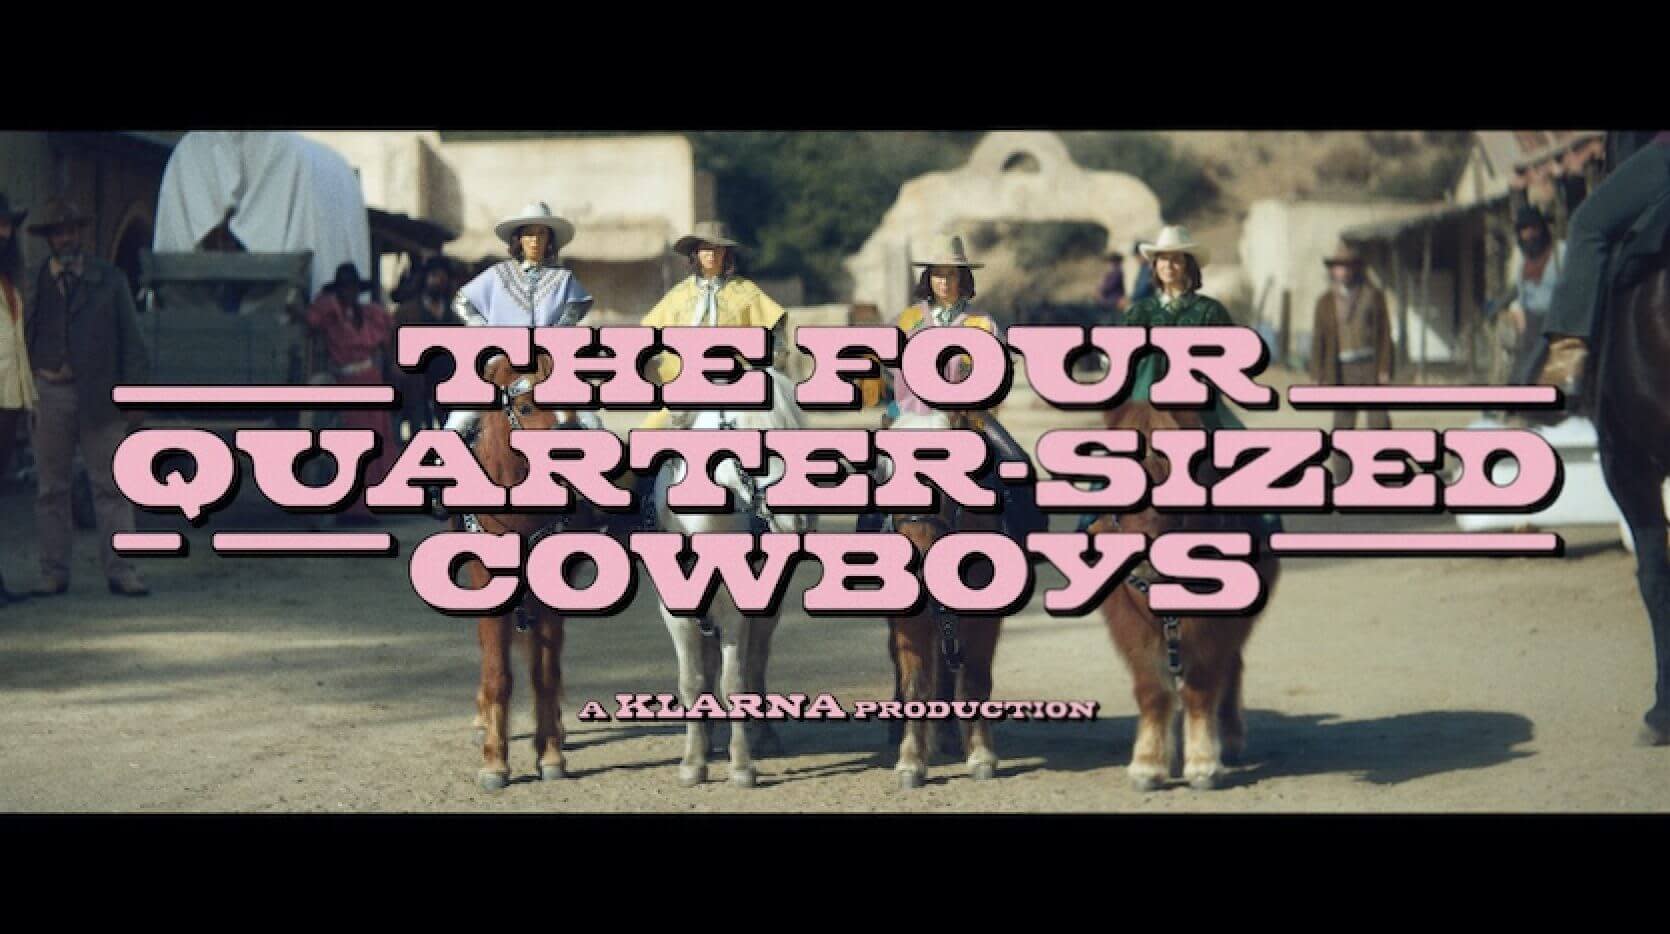 The Four Quarter-Sized Cowboys